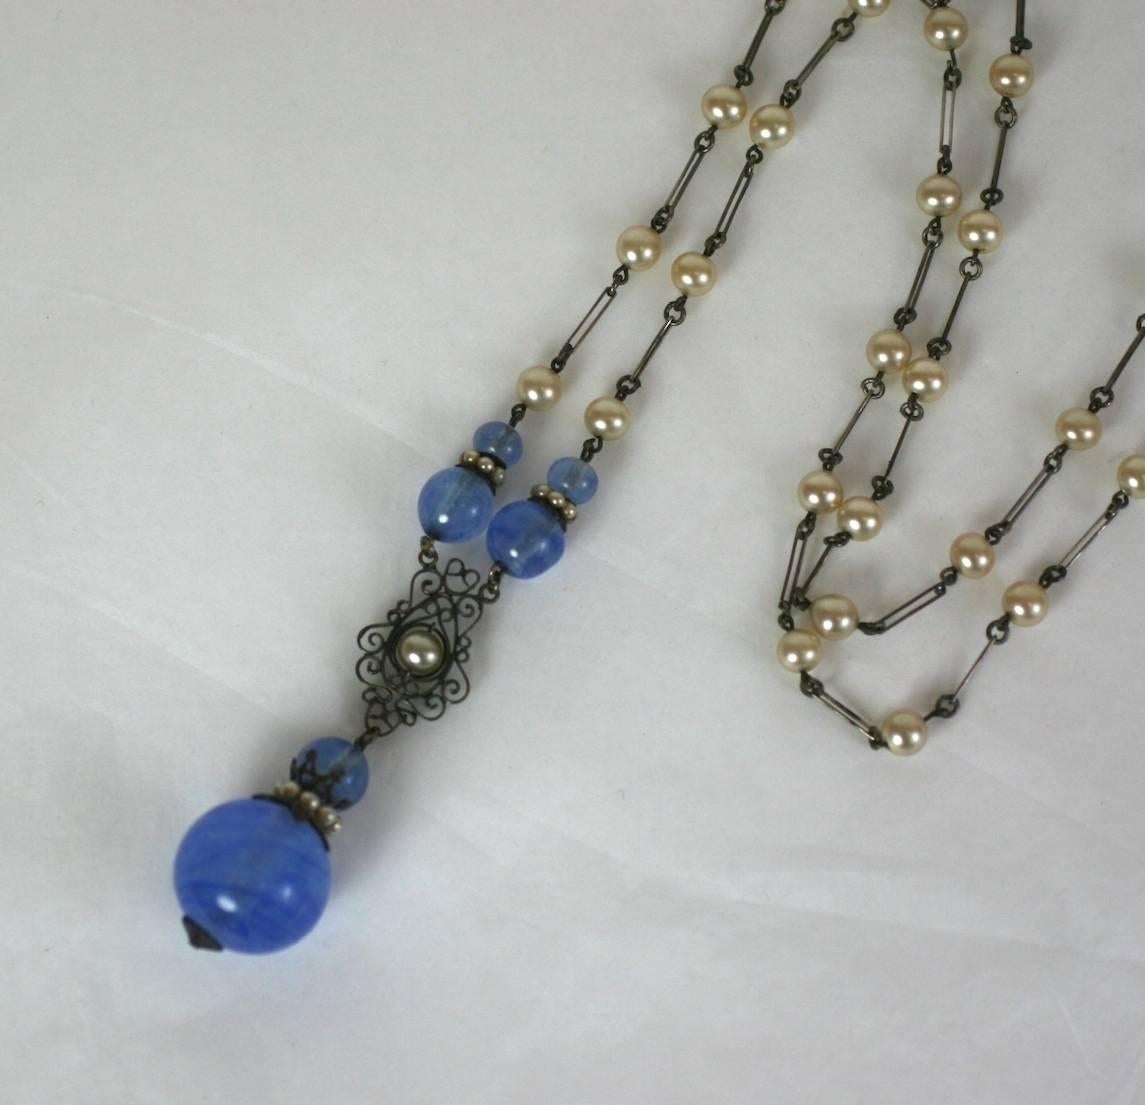 Louis Rousselet handmade opaline blue pate de verre, silver gilt pendant sautoir with faux pearl accents. 1920's France. Excellent Condition
L 30